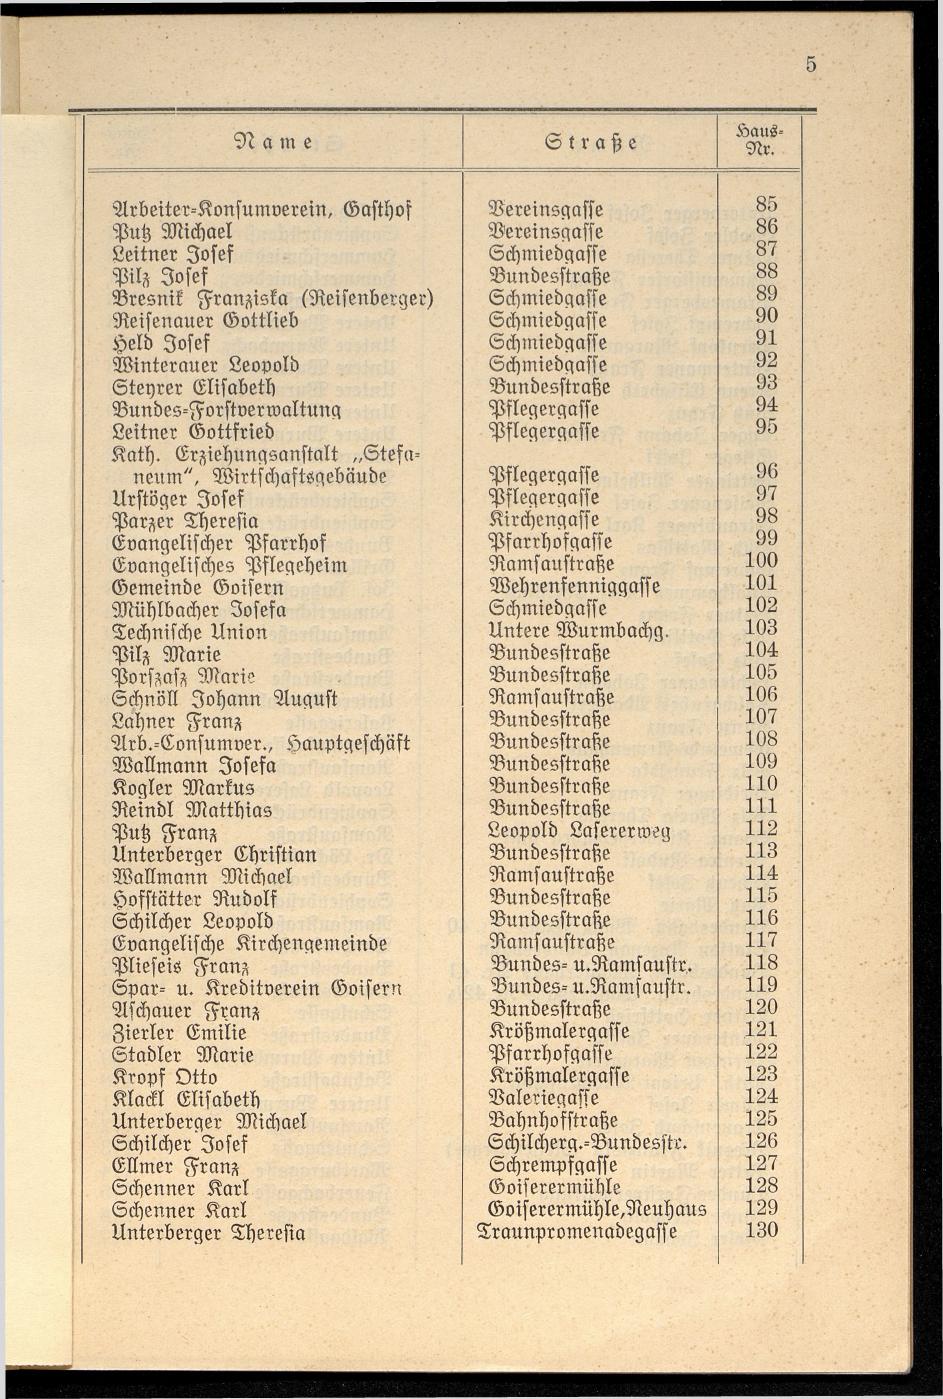 Häuser-Verzeichnis der Gemeinde Goisern nach dem Stande von Juli 1927 - Seite 9